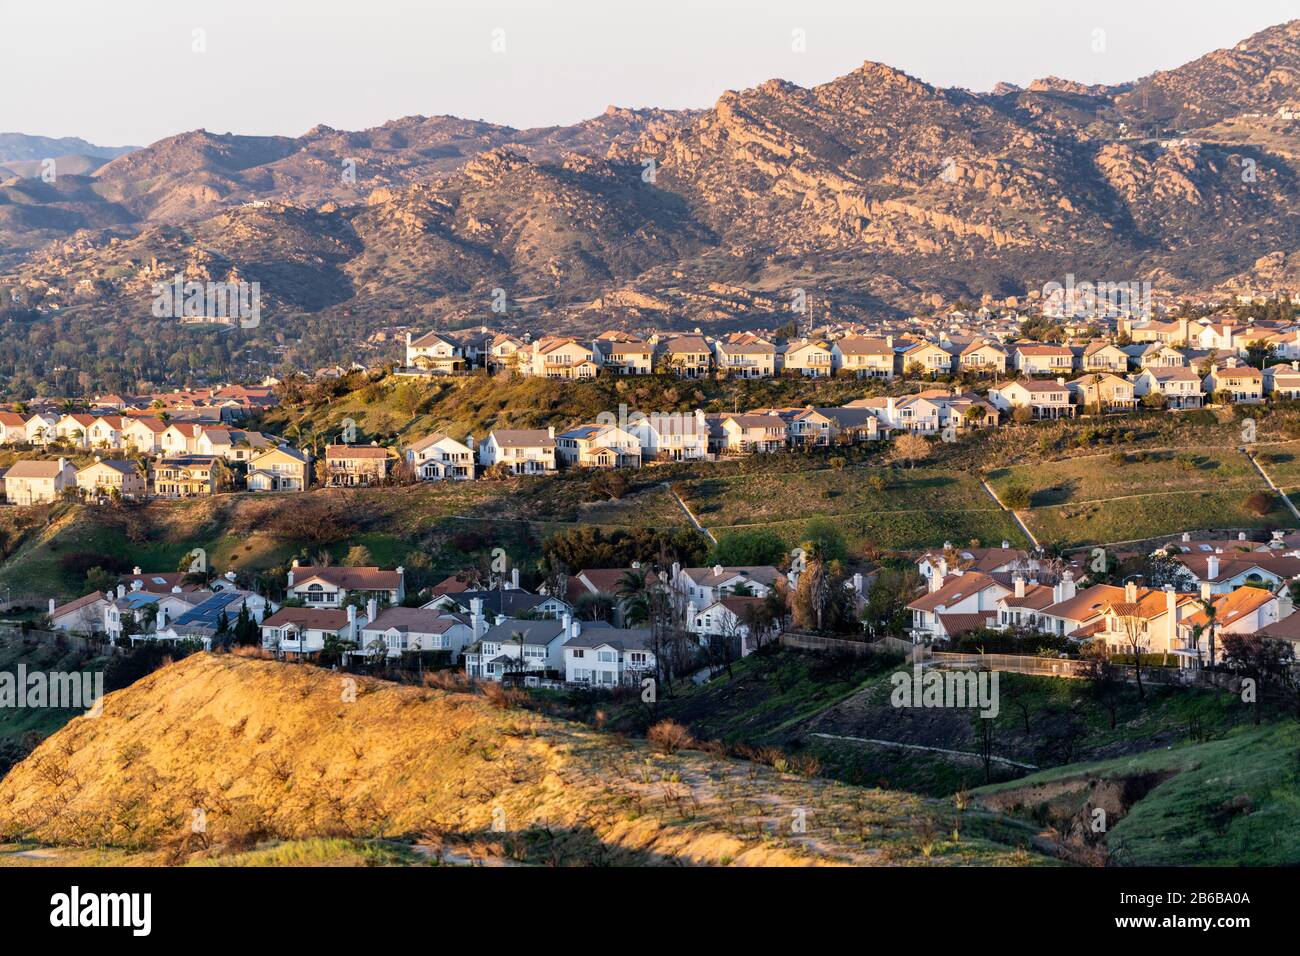 Rangées de maisons perchées surplombant la vallée de San Fernando dans le nord de Los Angeles, Californie. Les montagnes de Santa Susana sont en arrière-plan. Banque D'Images